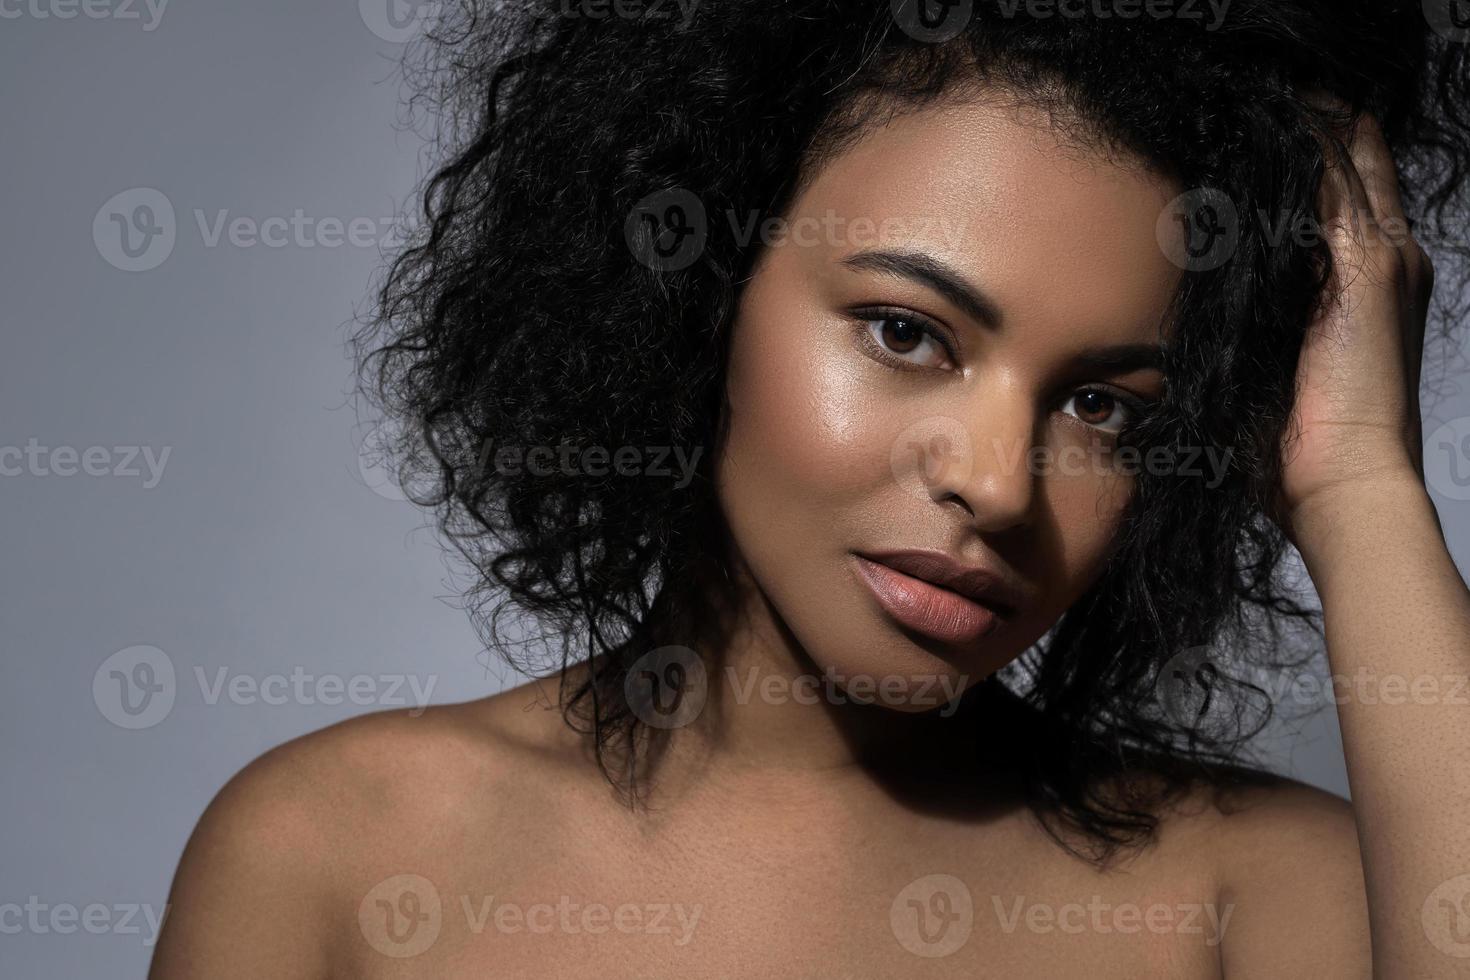 mooi zwart vrouw met glad huid tegen grijs achtergrond foto